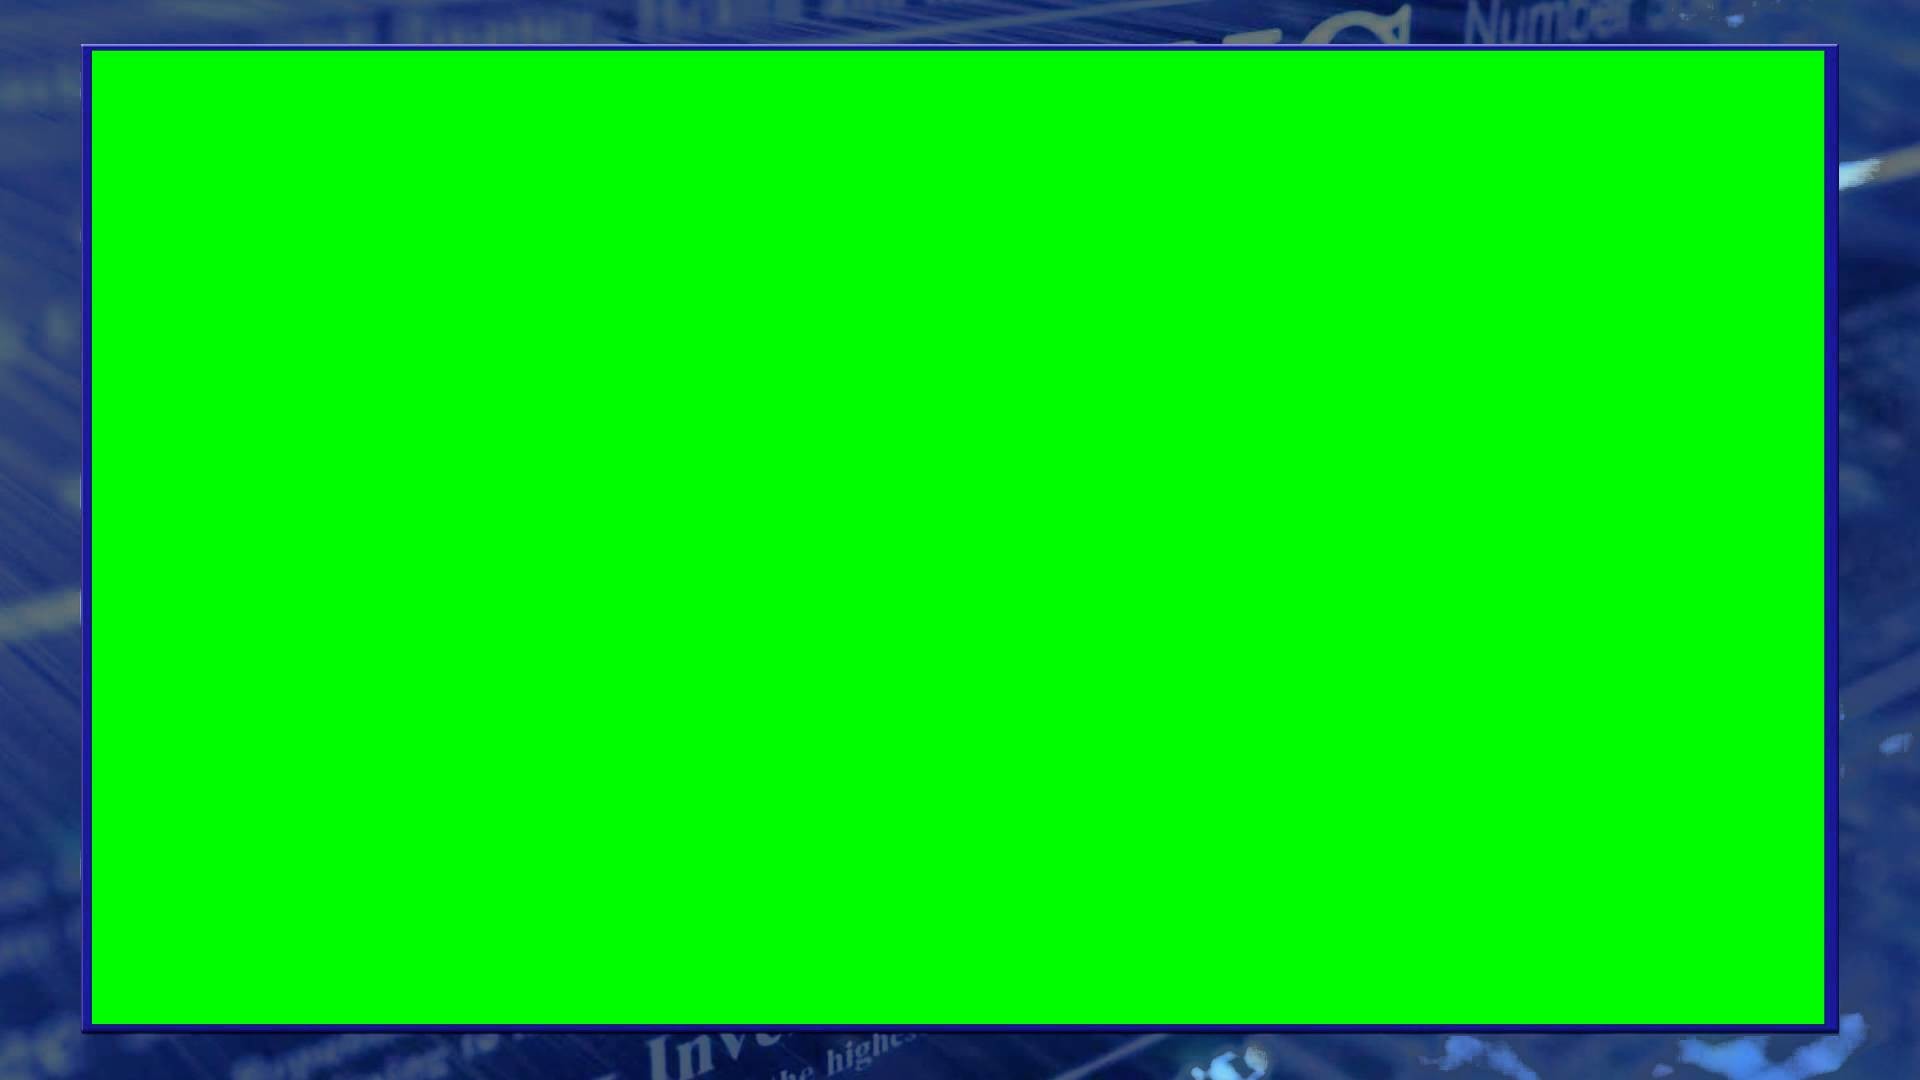 1920x1080, Green Screen News Overlay - High Resolution Green Screen  Background - 1920x1080 Wallpaper 